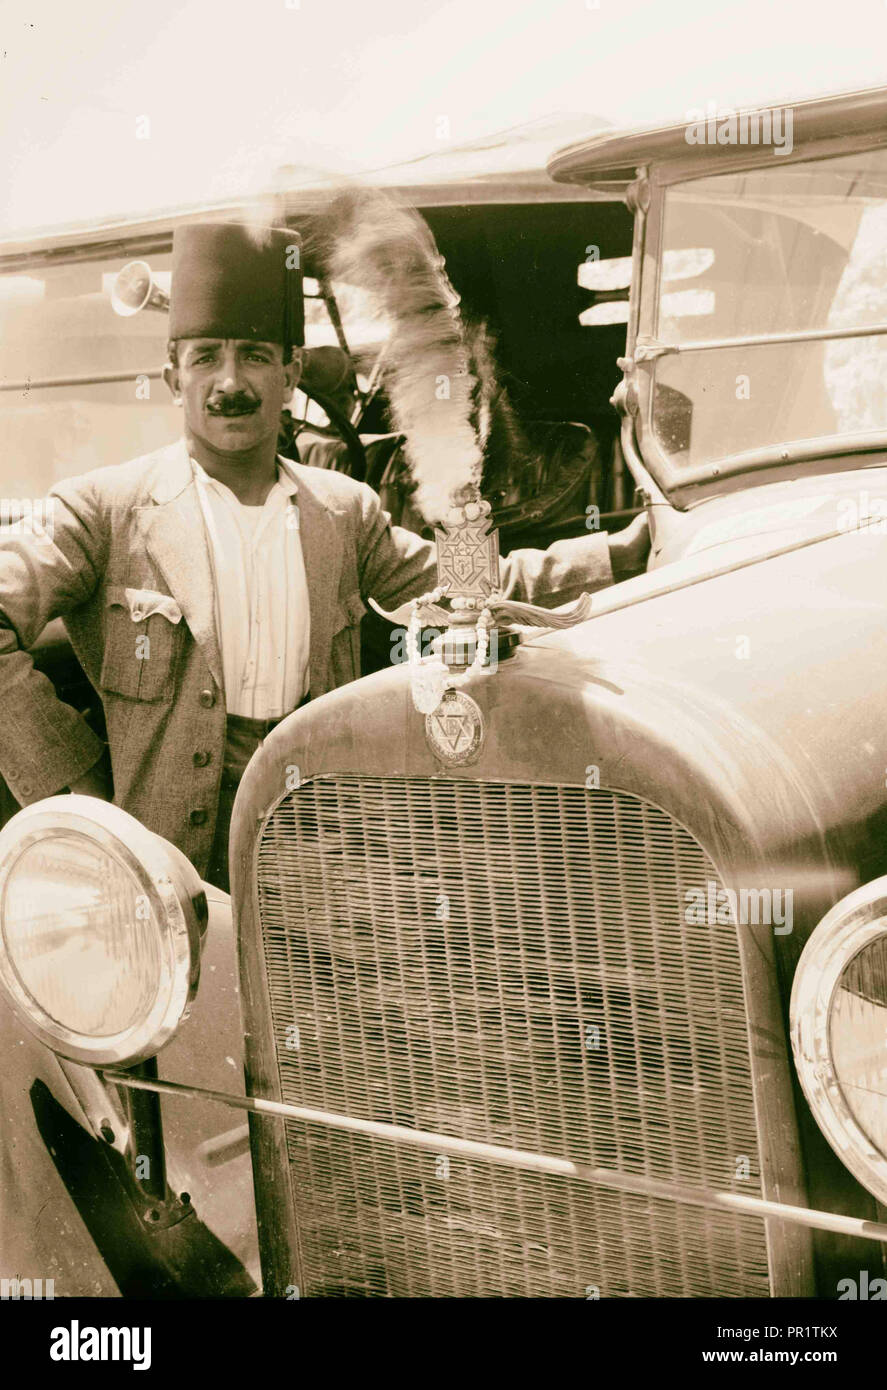 Arab poste accanto a nuova Dodge 1920, Medio Oriente, Israele e/o la Palestina Foto Stock